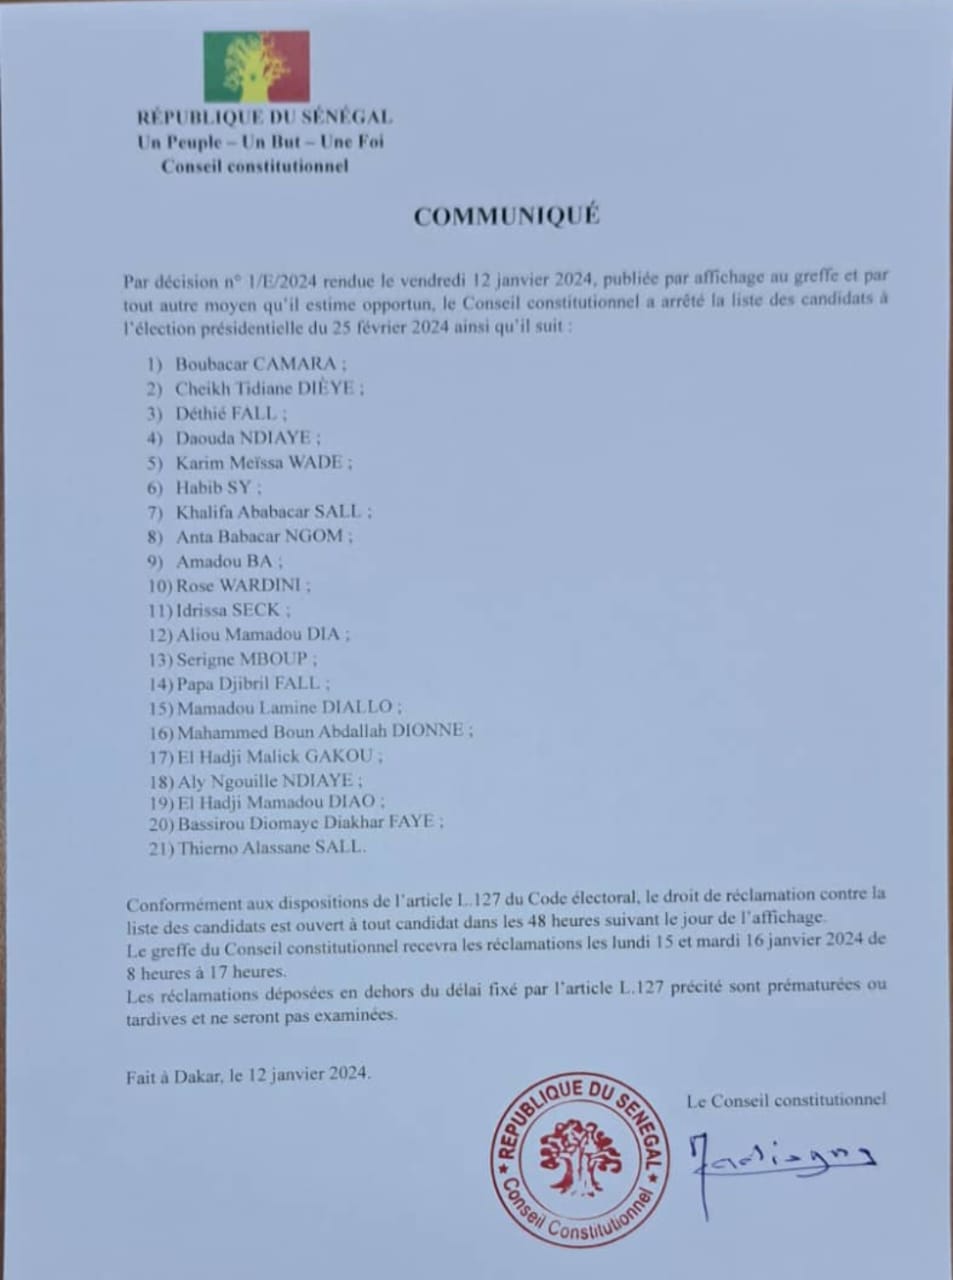 Publiée hier par le Conseil constitutionnel : la liste des candidats à l'élection présidentielle du 25 février 2024